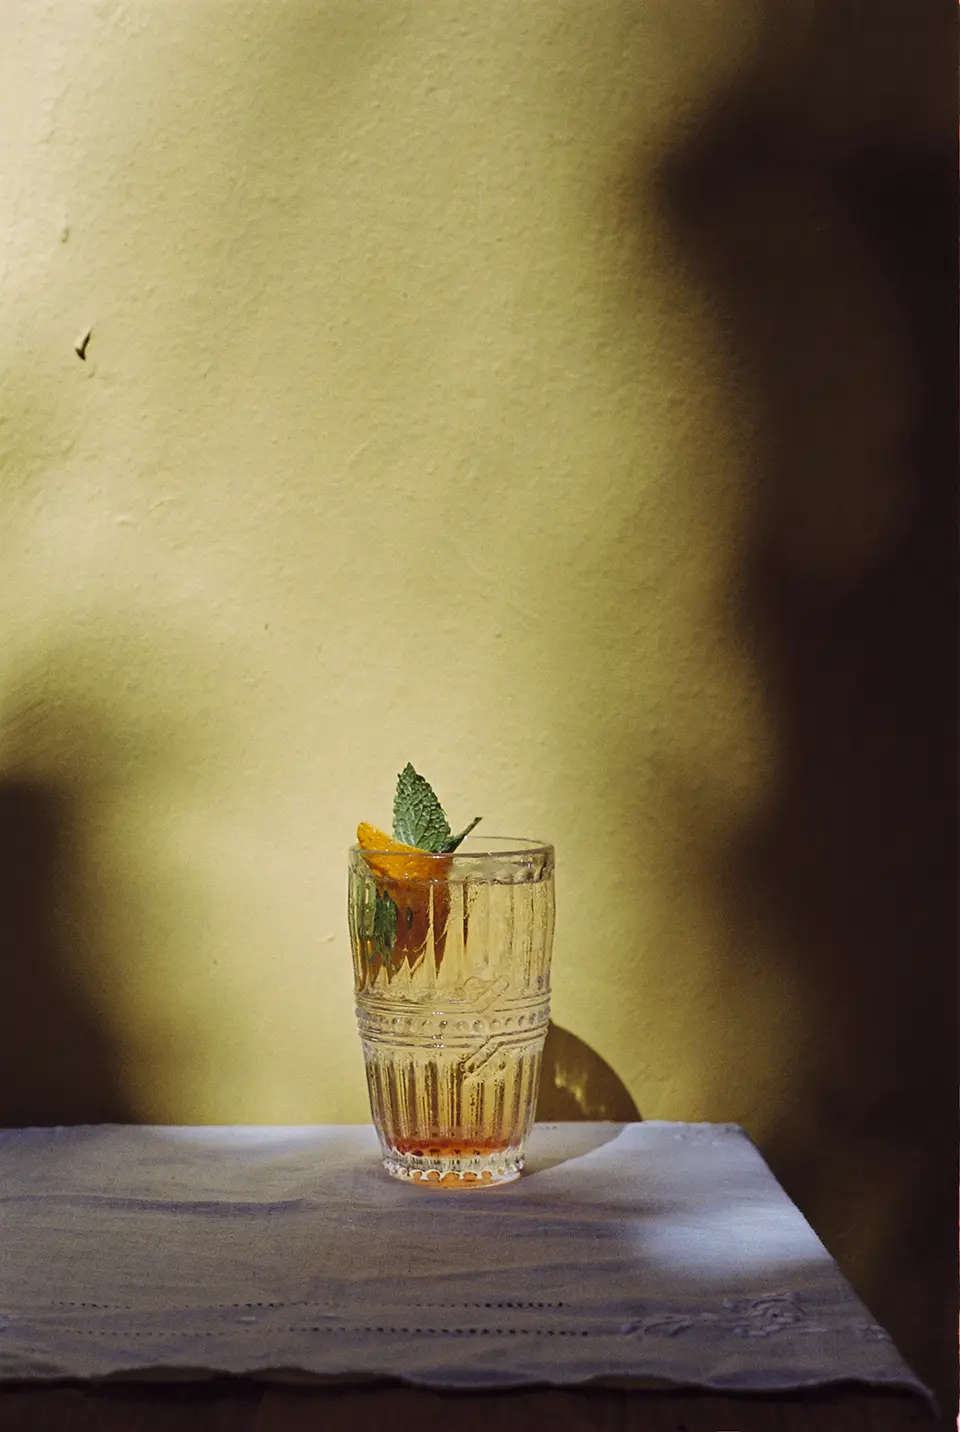 Um copo com um drink transparente, levemente alaranjado repousa sobre uma mesa coberta com uma tolha branca. Dentro do copo há também meia fatia de limão siciliano e um ramo de hortelã.